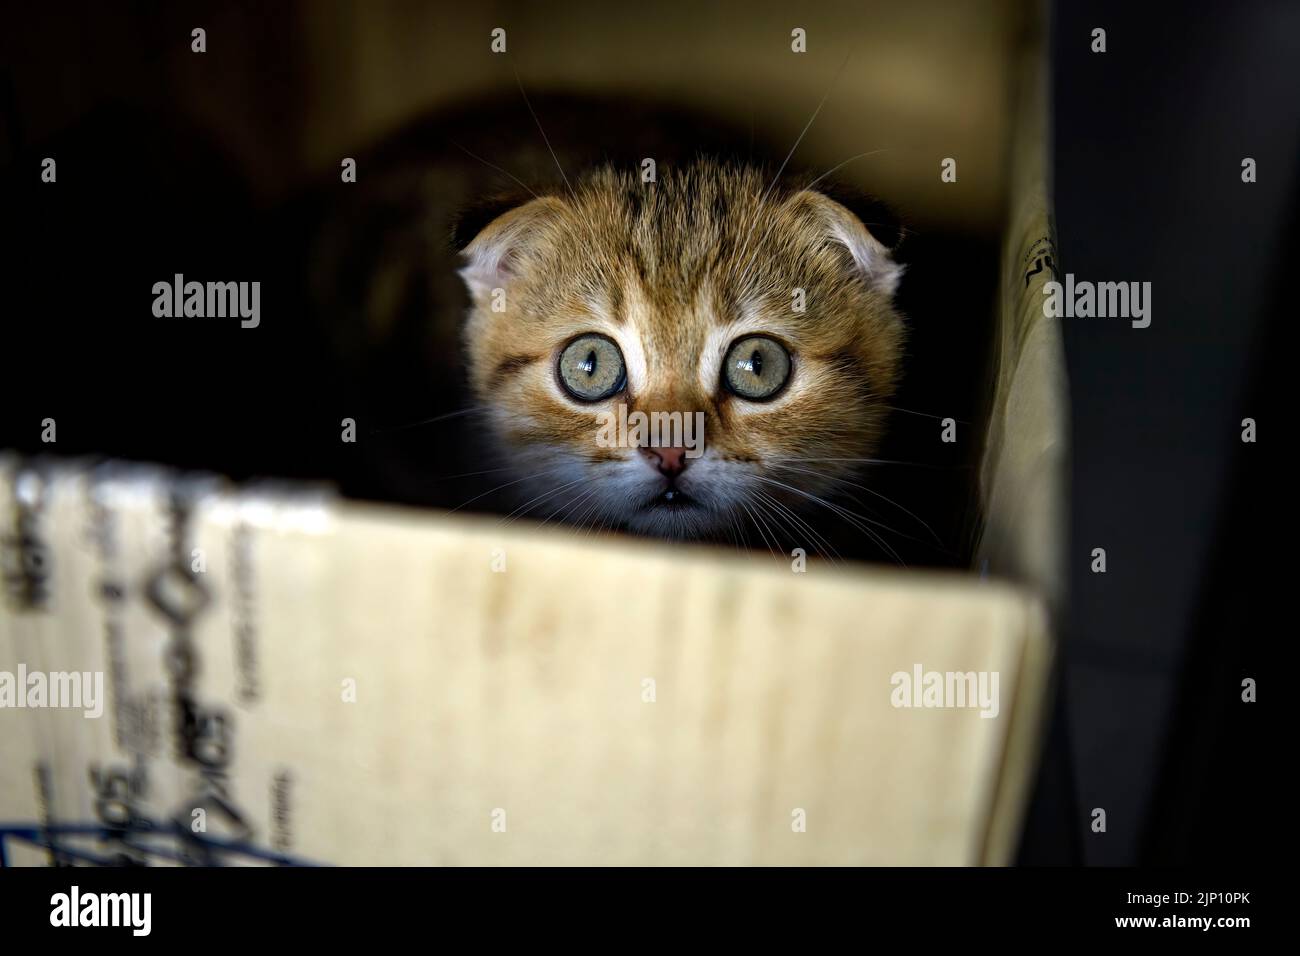 Gatito escocés de rayas jugando travieso y secretamente en la caja en la oscuridad y mirando, el pequeño gato escondido en una caja de cartón parecía lamentable. Foto de stock